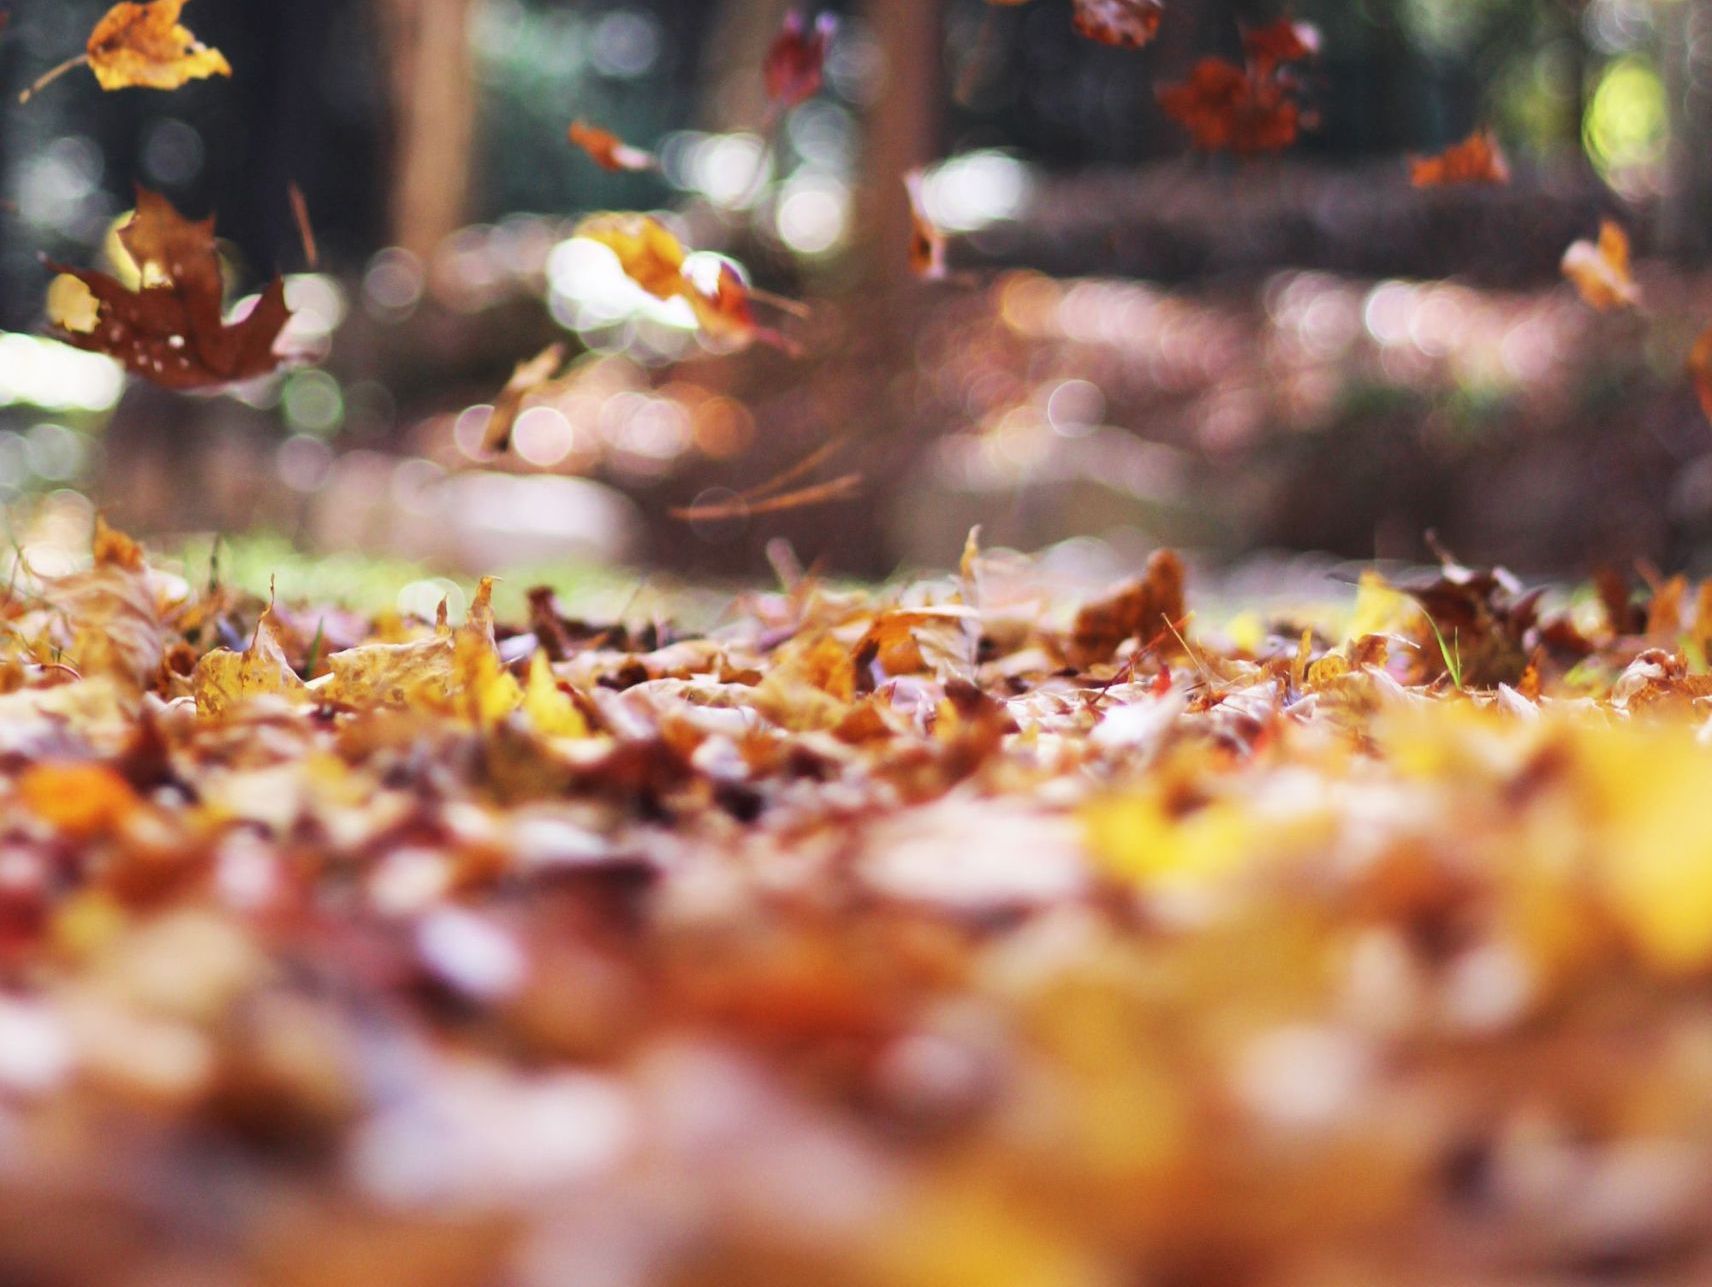 Løv som faller ned på bakken i en skog om høsten med sol som skinner mellom trær